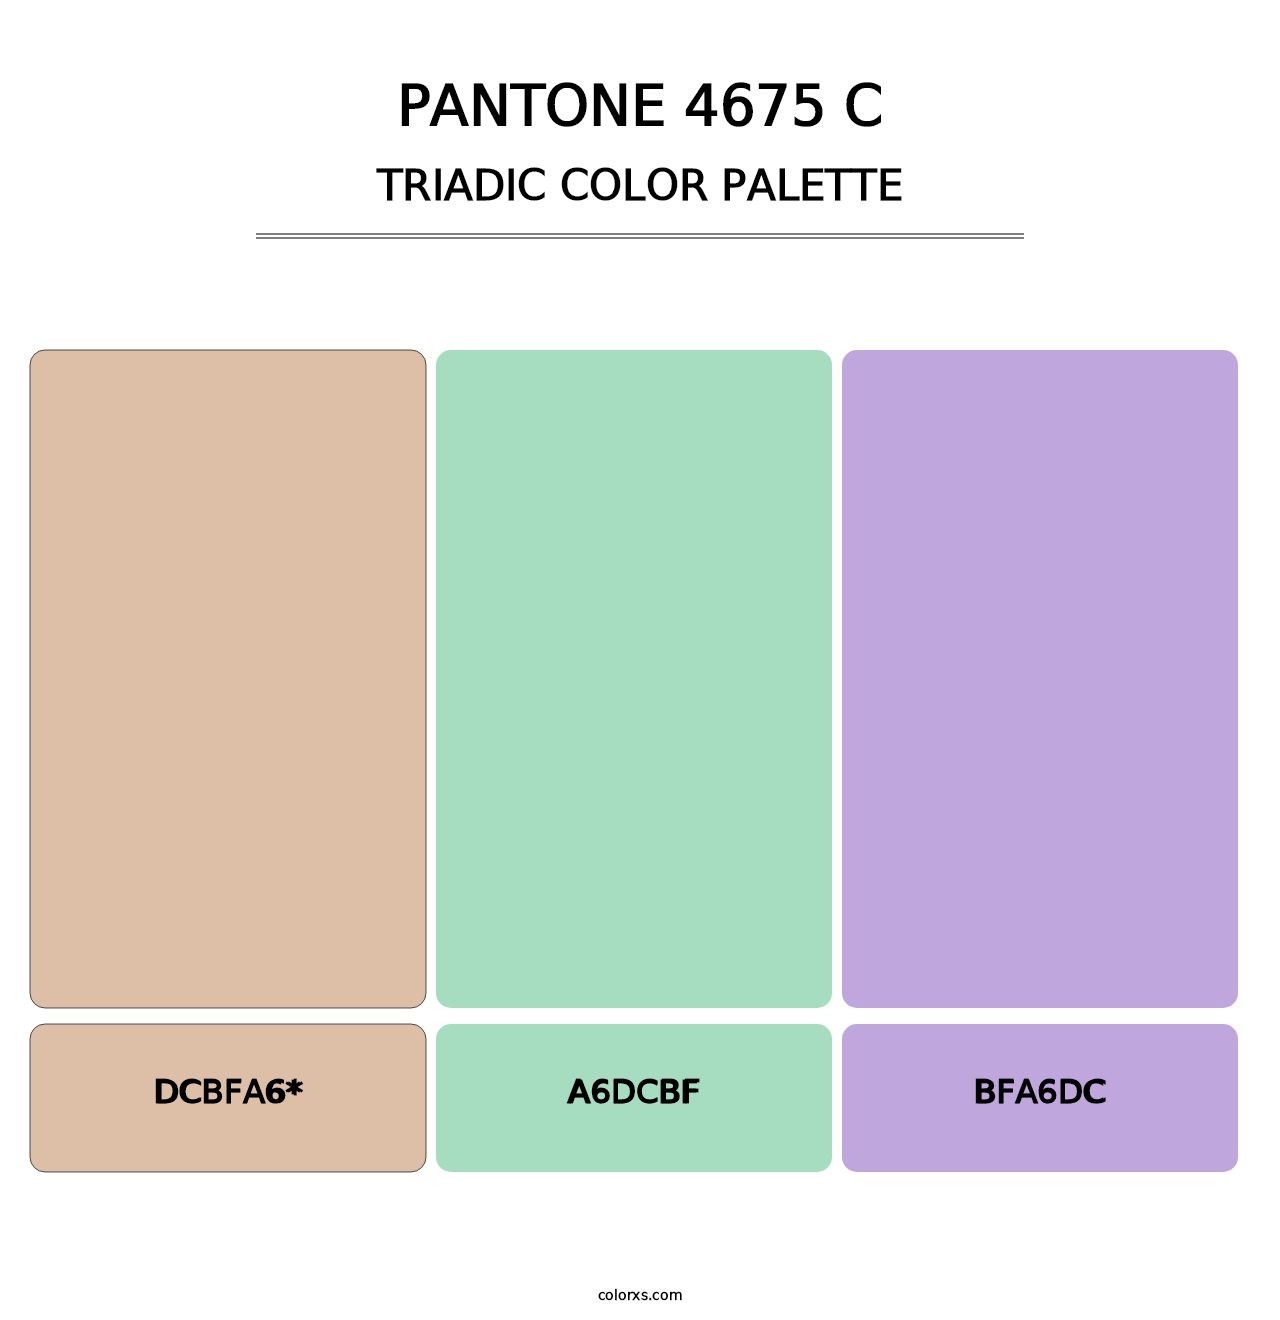 PANTONE 4675 C - Triadic Color Palette